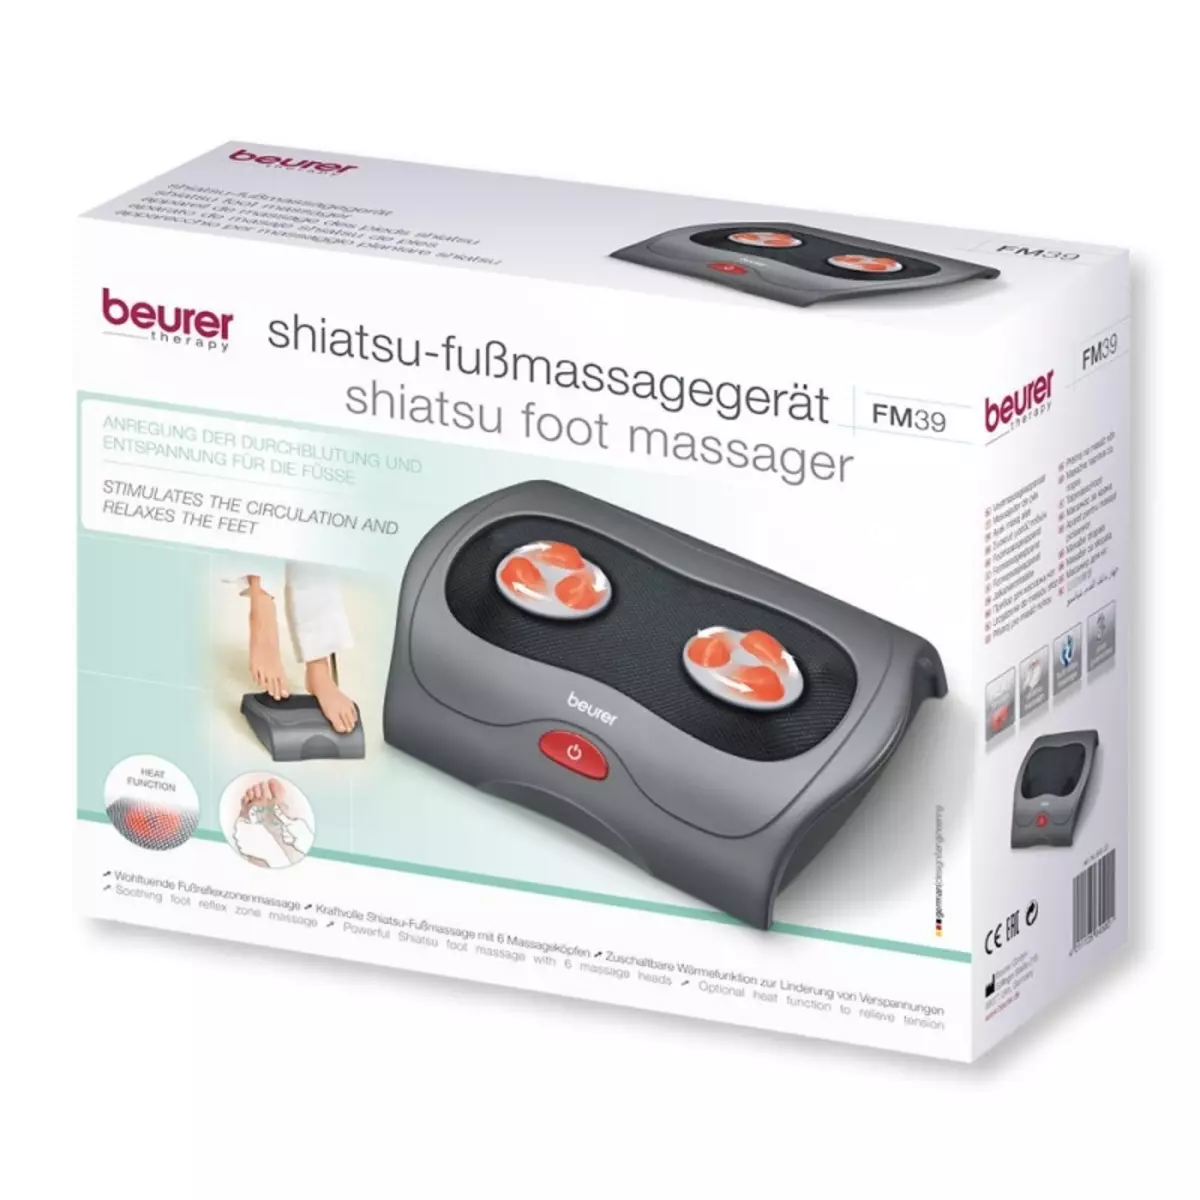 Beurer voetmassagers: FM39 en andere modellen, instructies voor hun gebruik. Beschrijving van elektrische witte massager 16305_11